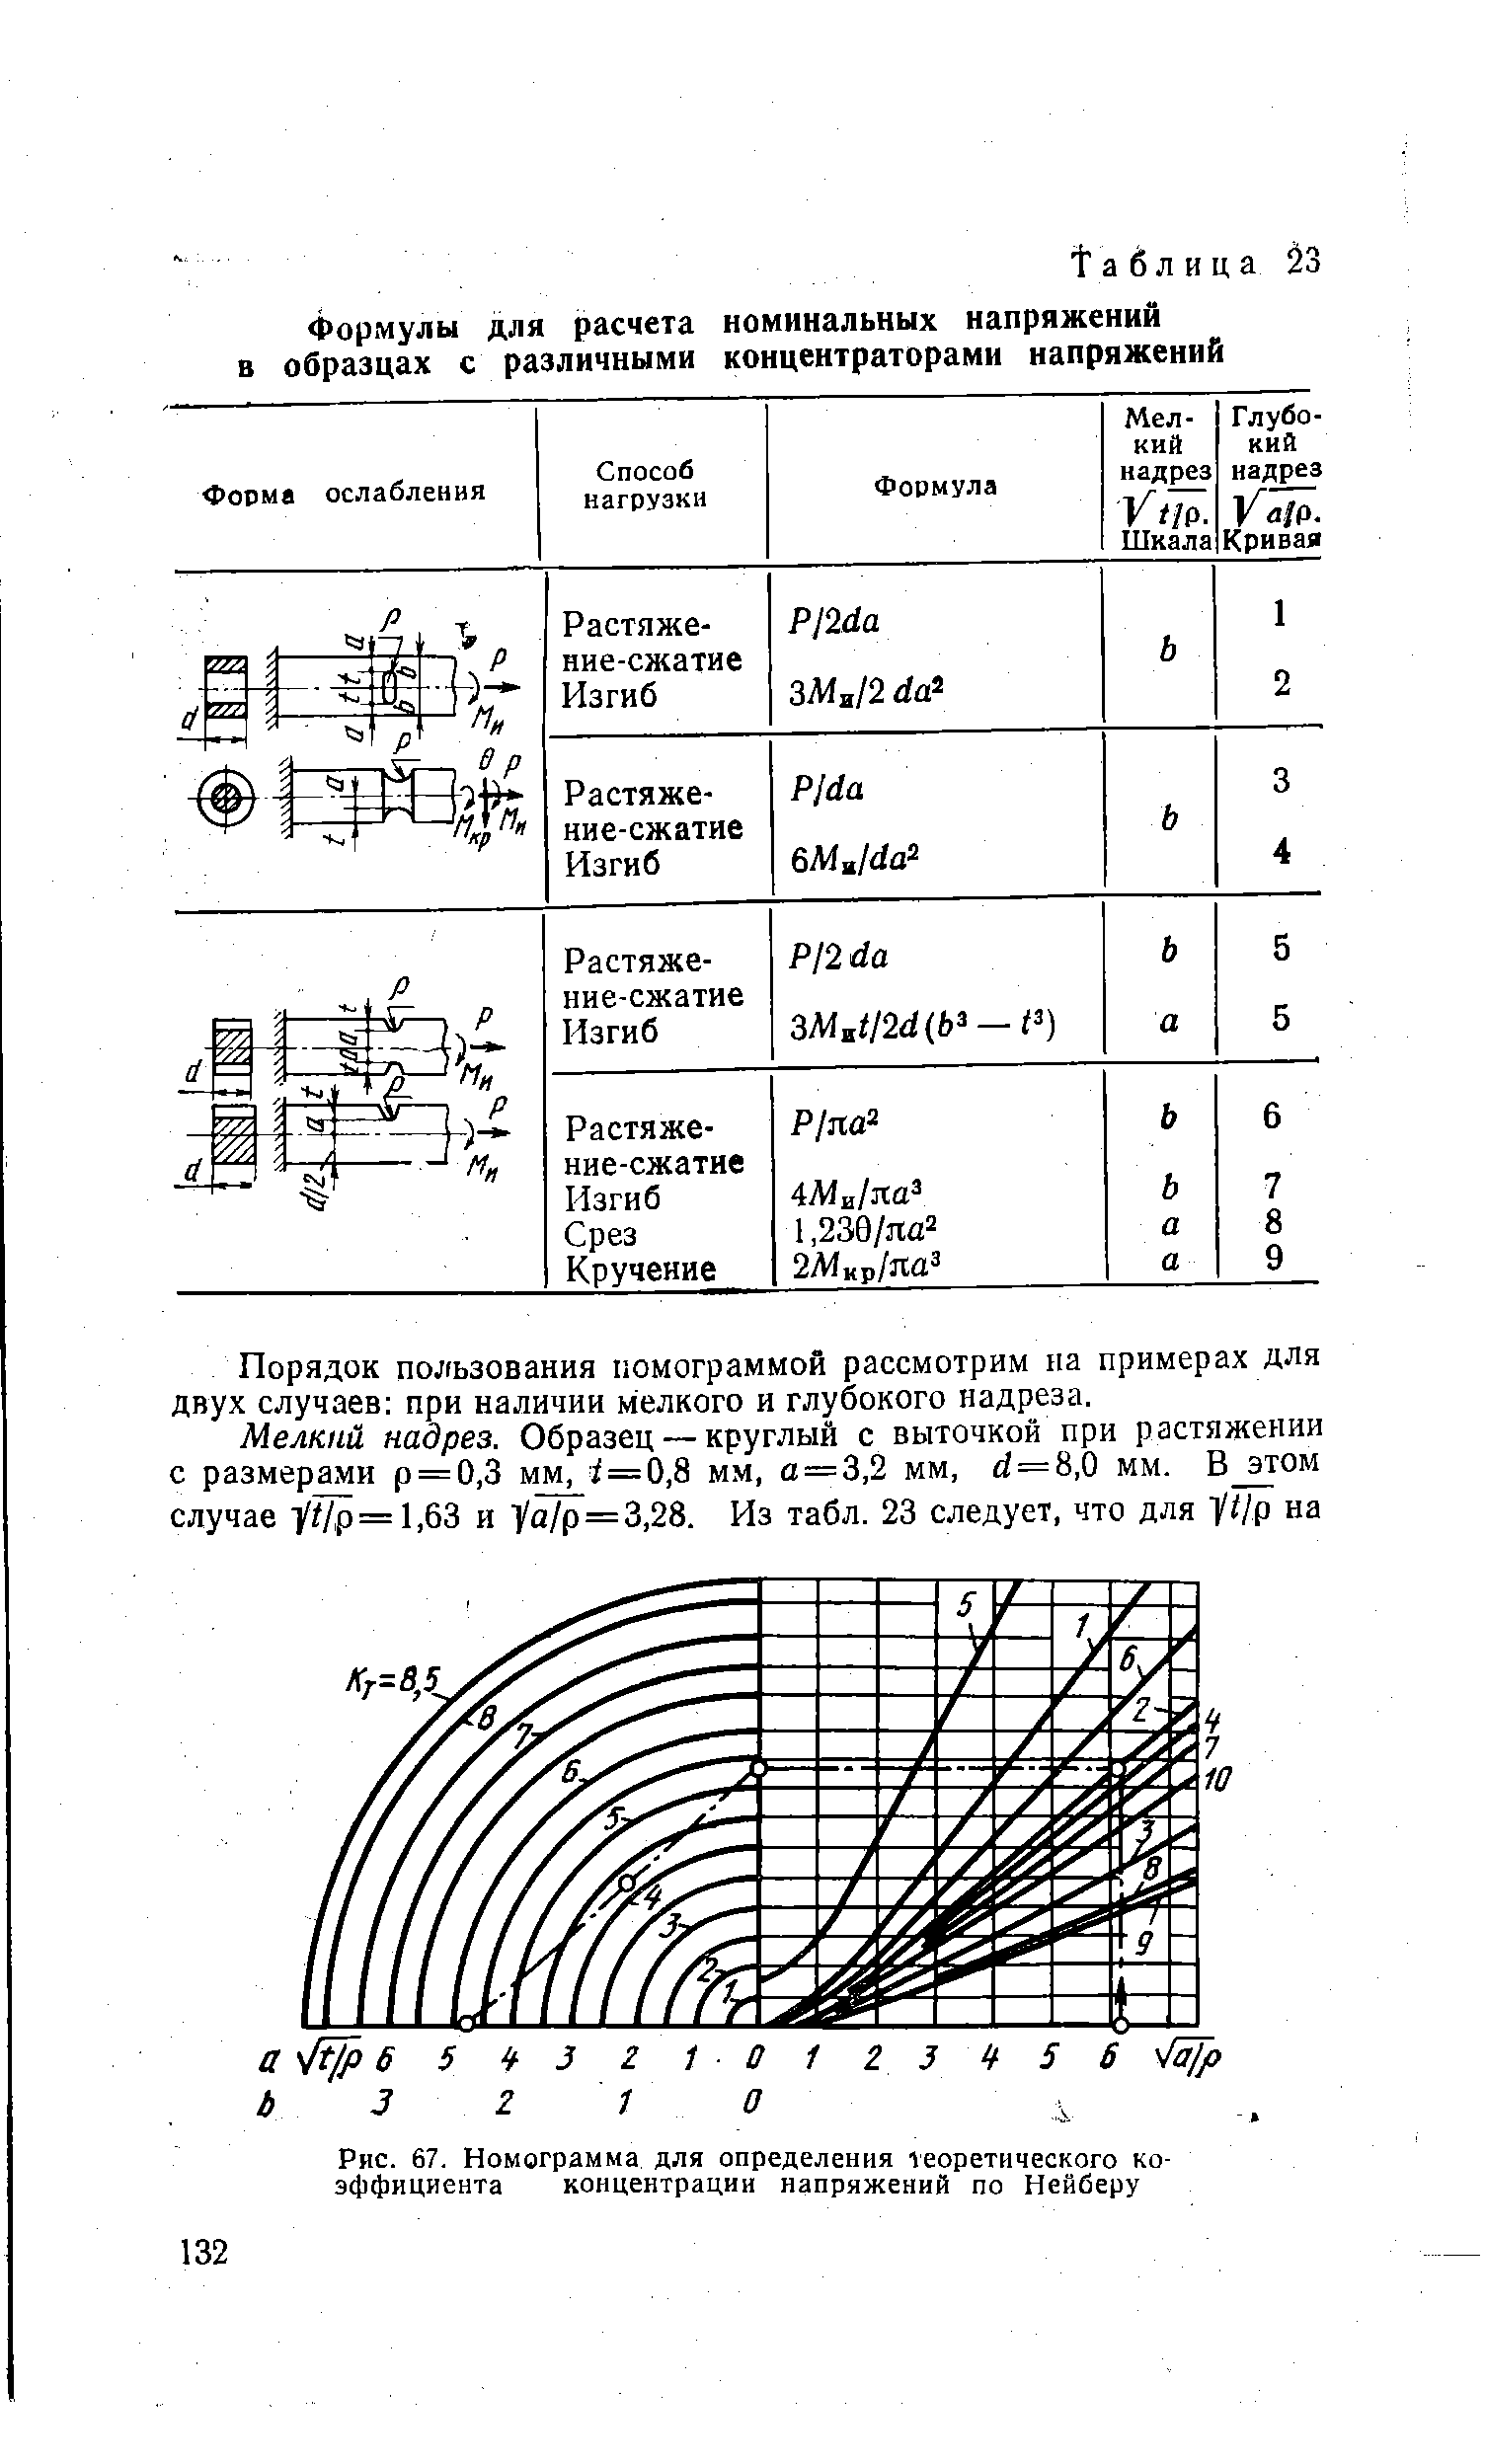 Рис. 67. Номограмма для определения георетического коэффициента концентрации напряжений по Нейберу
